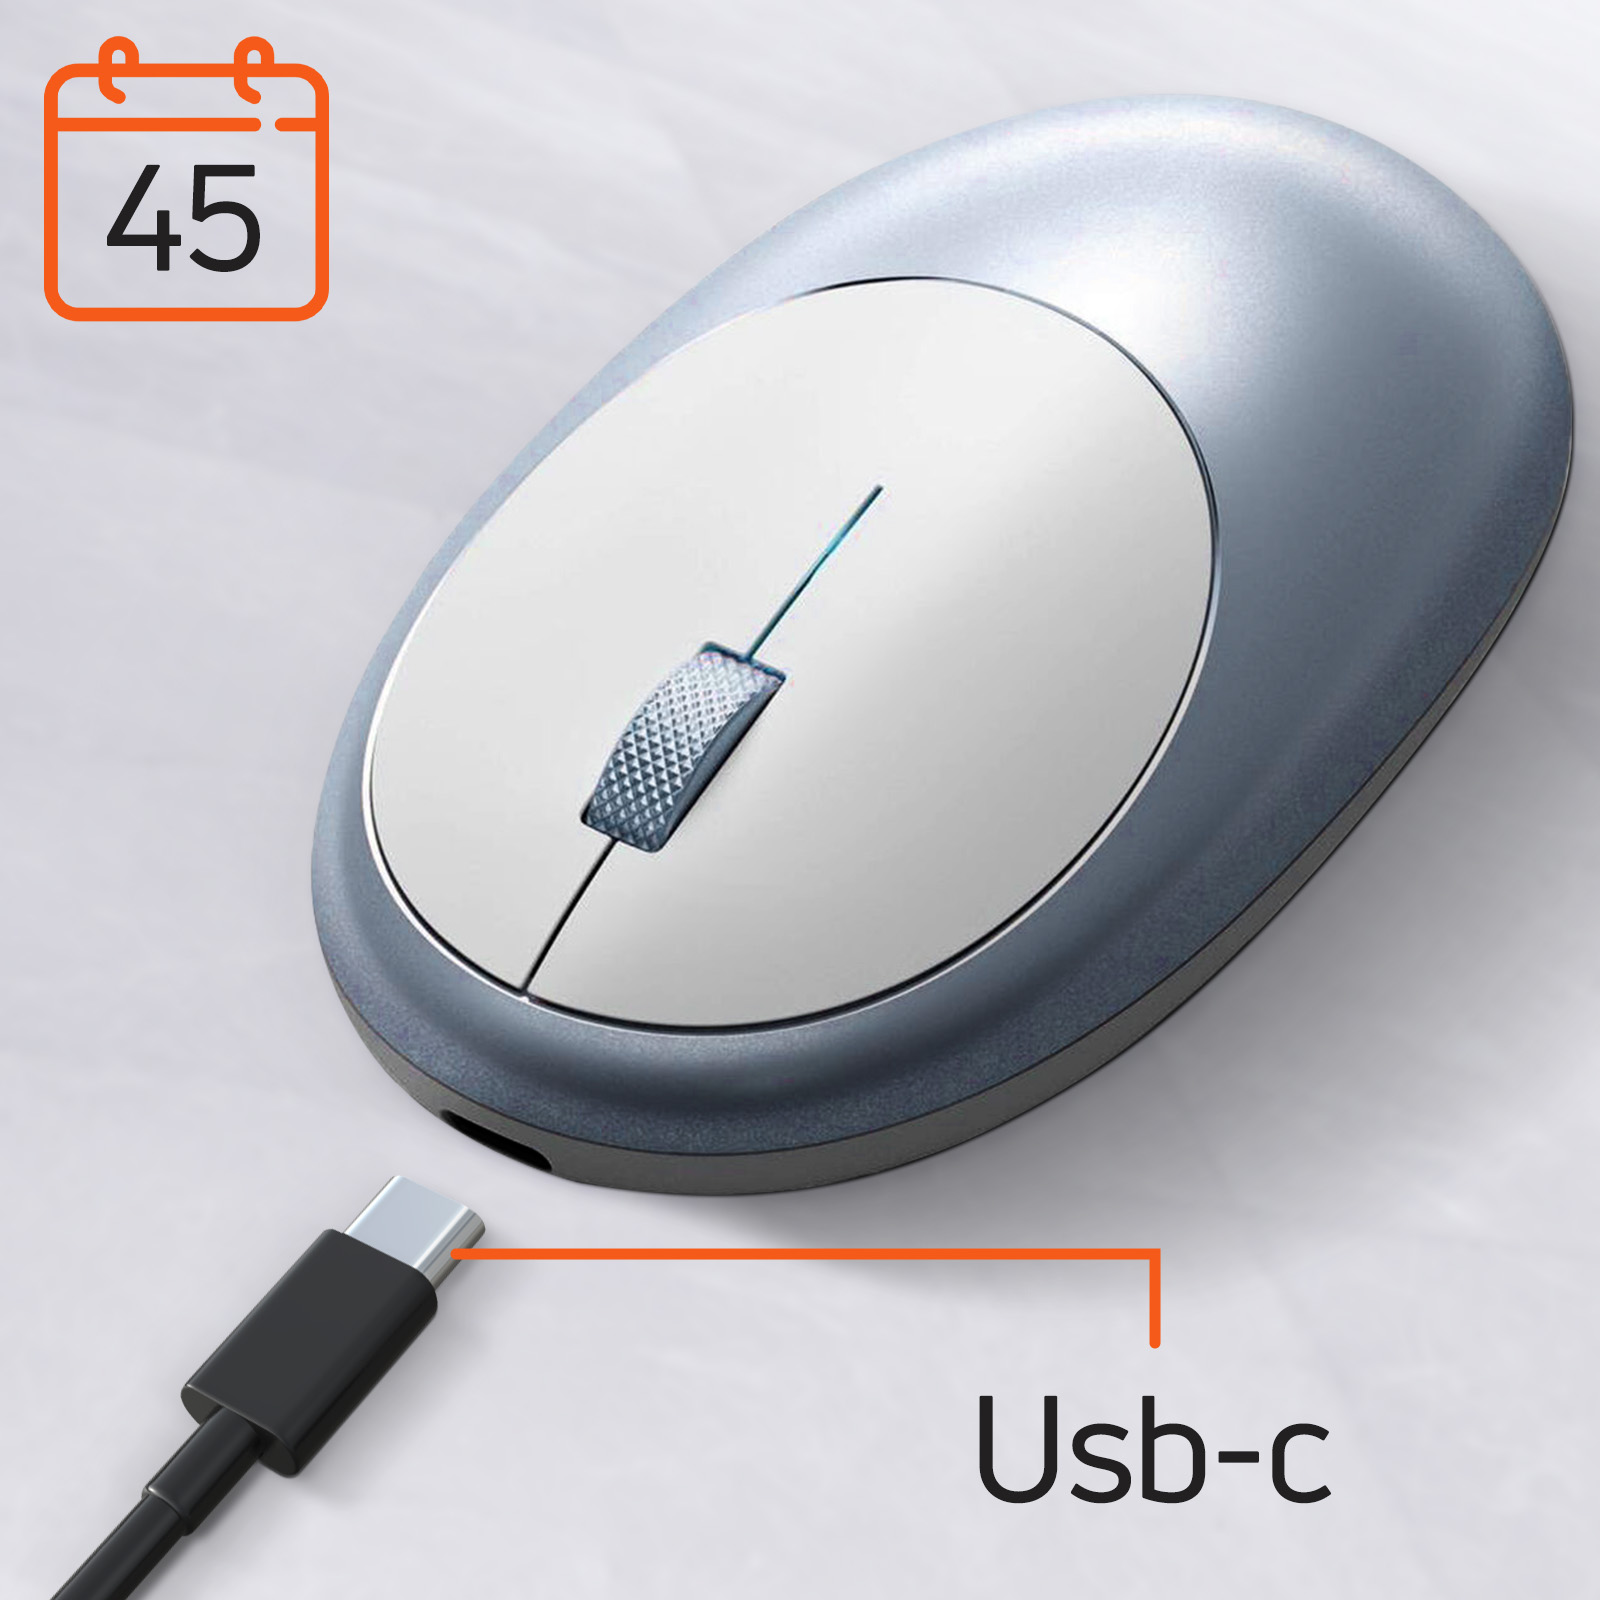 Mouse Bluetooth per MacBook e iMac ricaricabile USB-C, Satechi M1 - azzurro  - Italiano